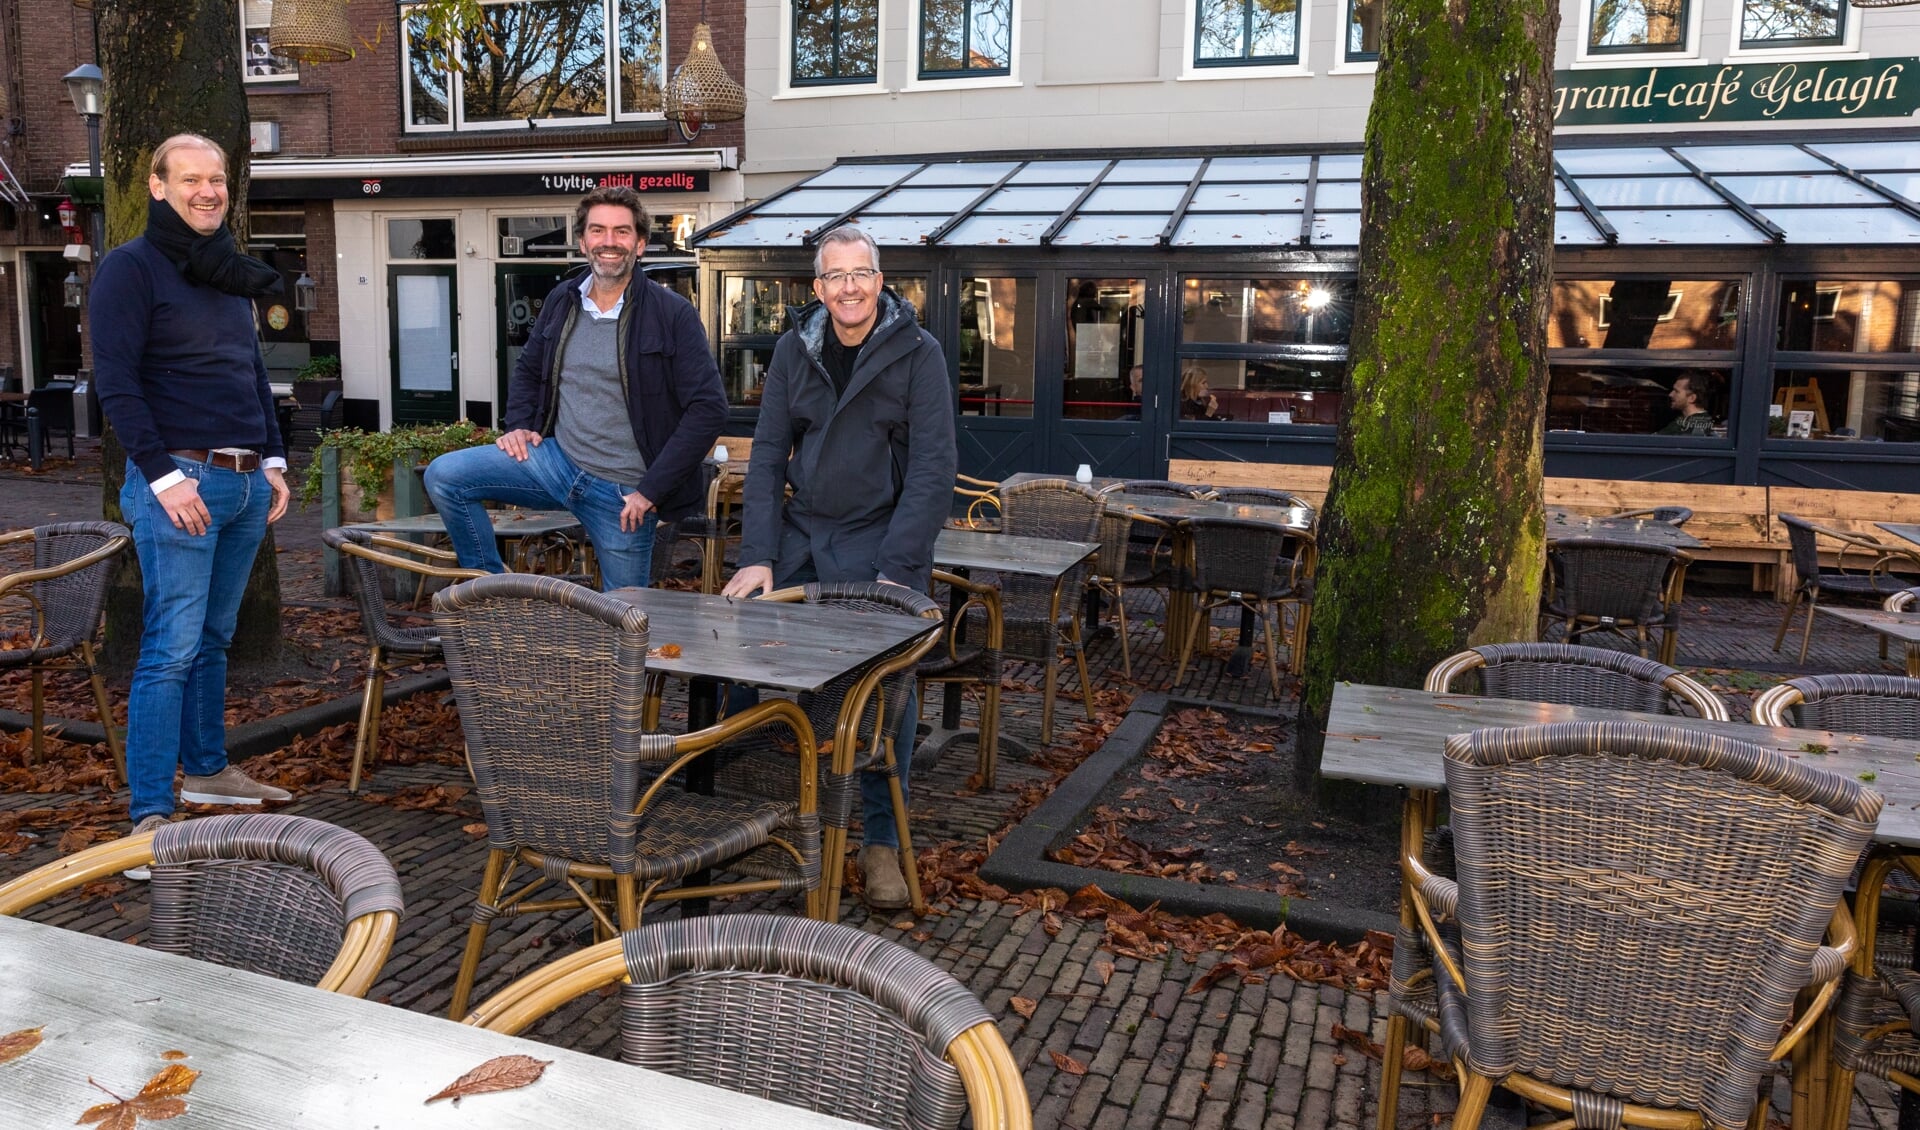 Frank Visch (midden) en Pieter van der Brugge (l.) van de Rotary Santa Run-organisatie en Marco Uijterlinde van Grand café ’t Gelagh.